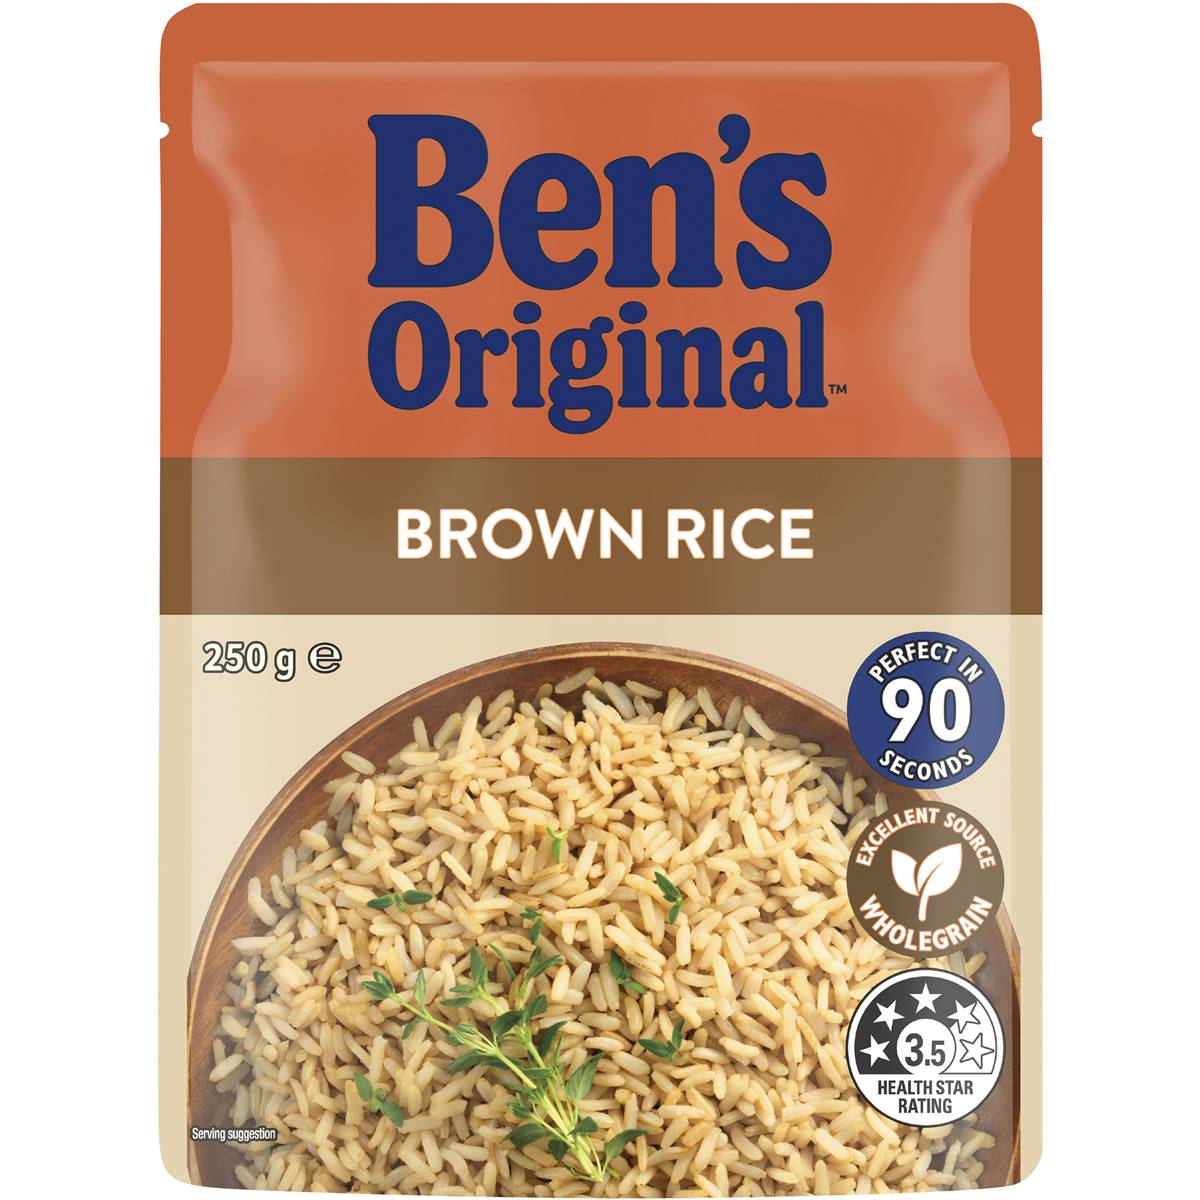 Bens Original Brown Rice 250g